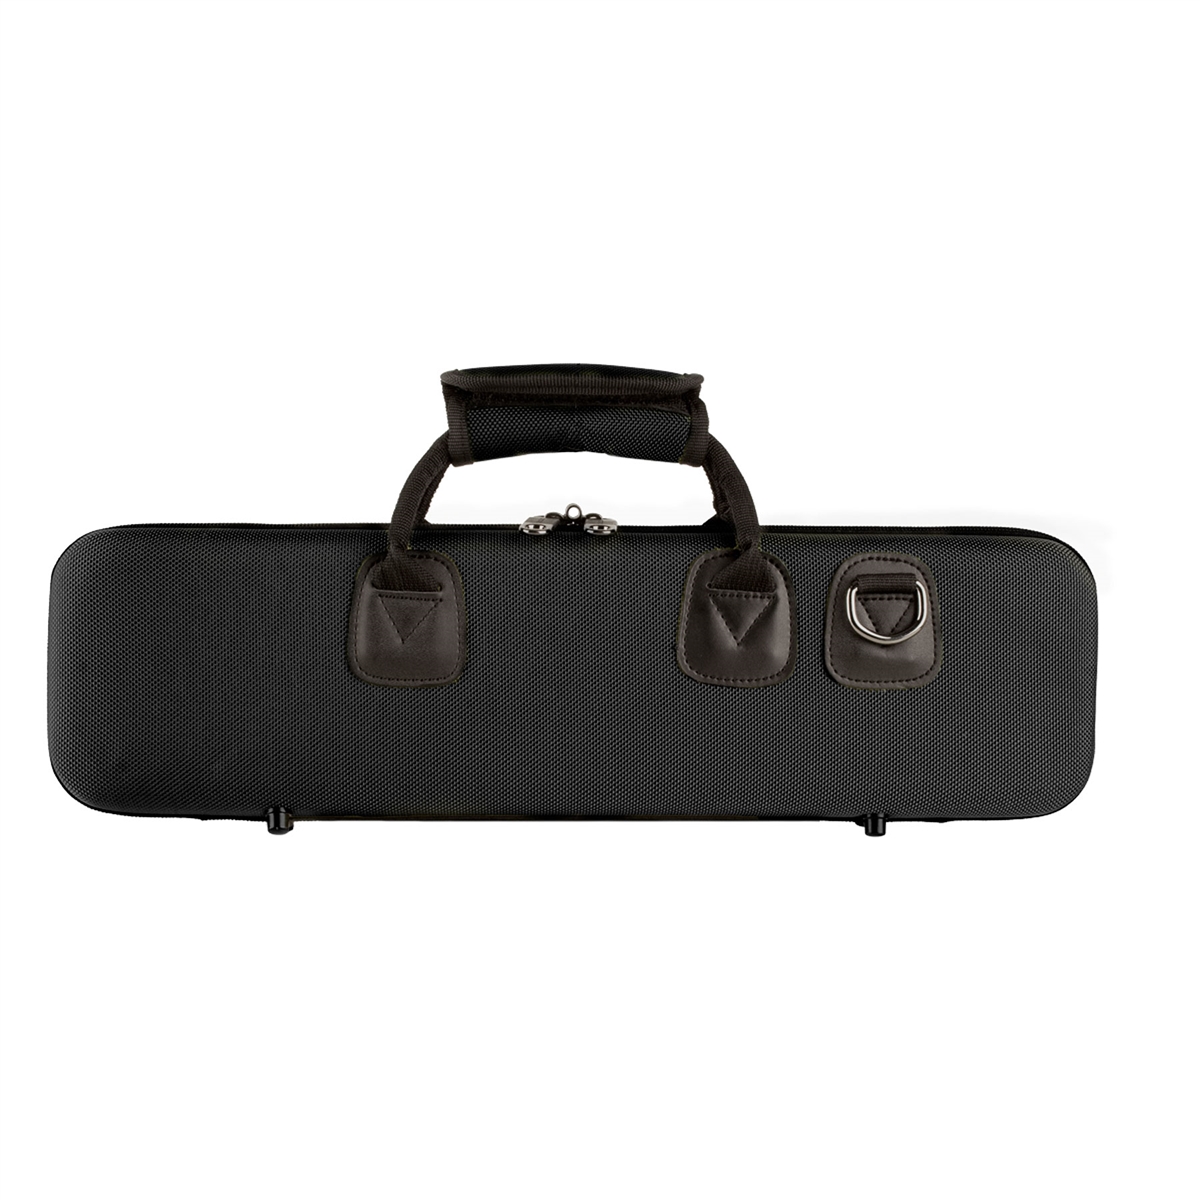 Protec PB308 Koffer voor Dwarsfluit - Zwart